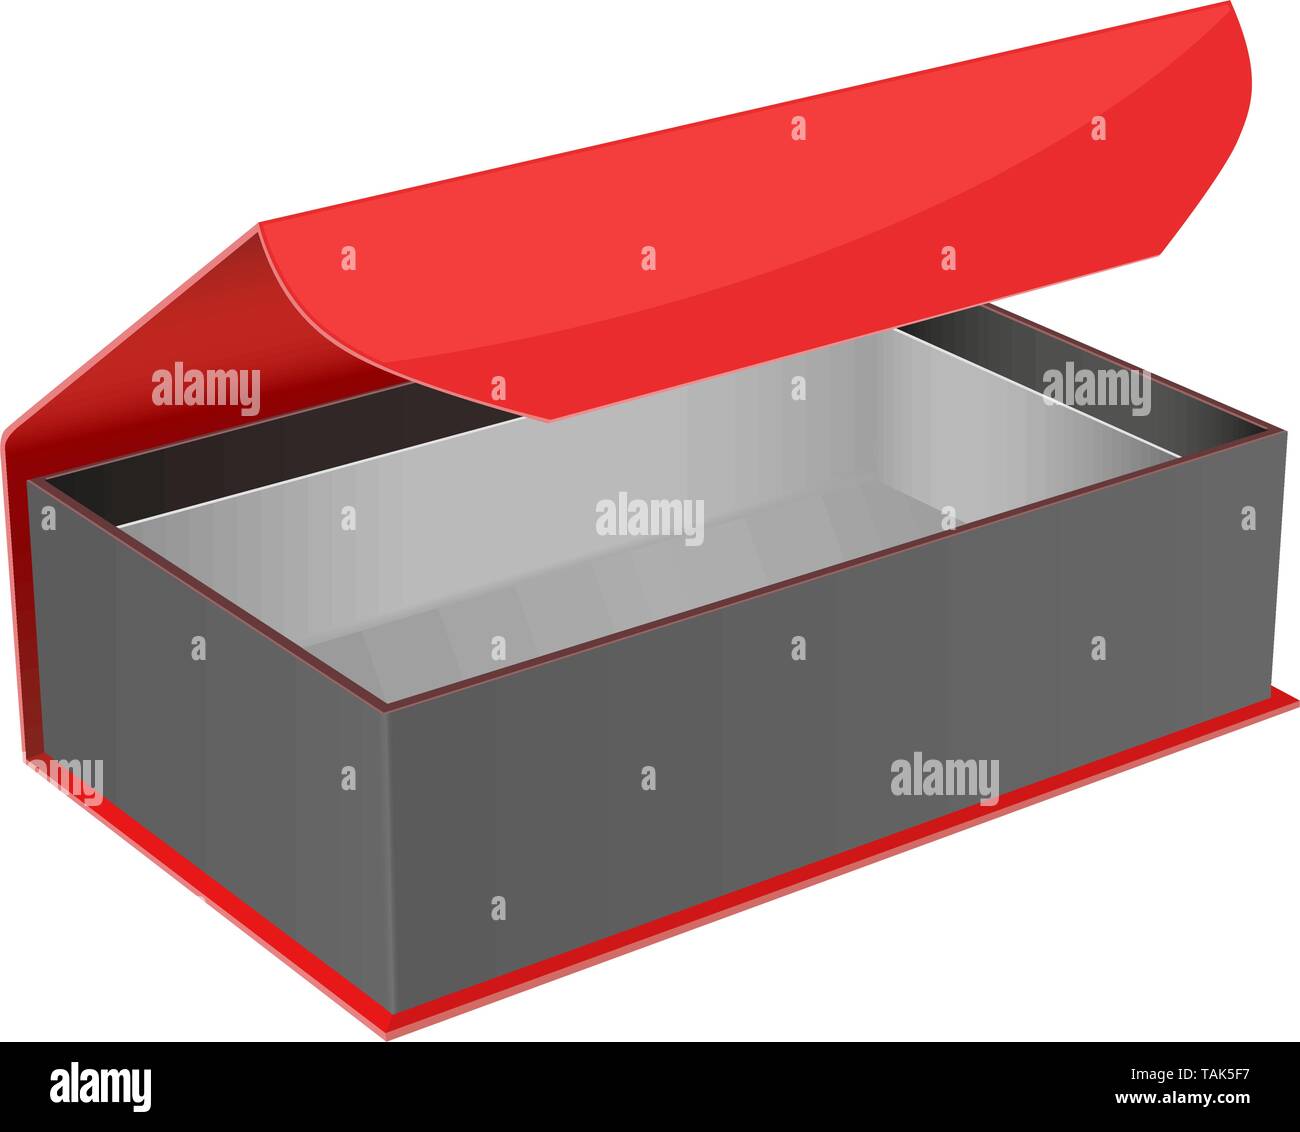 Rot und Schwarz Geschenkbox. Öffnen schmuck Box mit Magnetverschluss  Stock-Vektorgrafik - Alamy